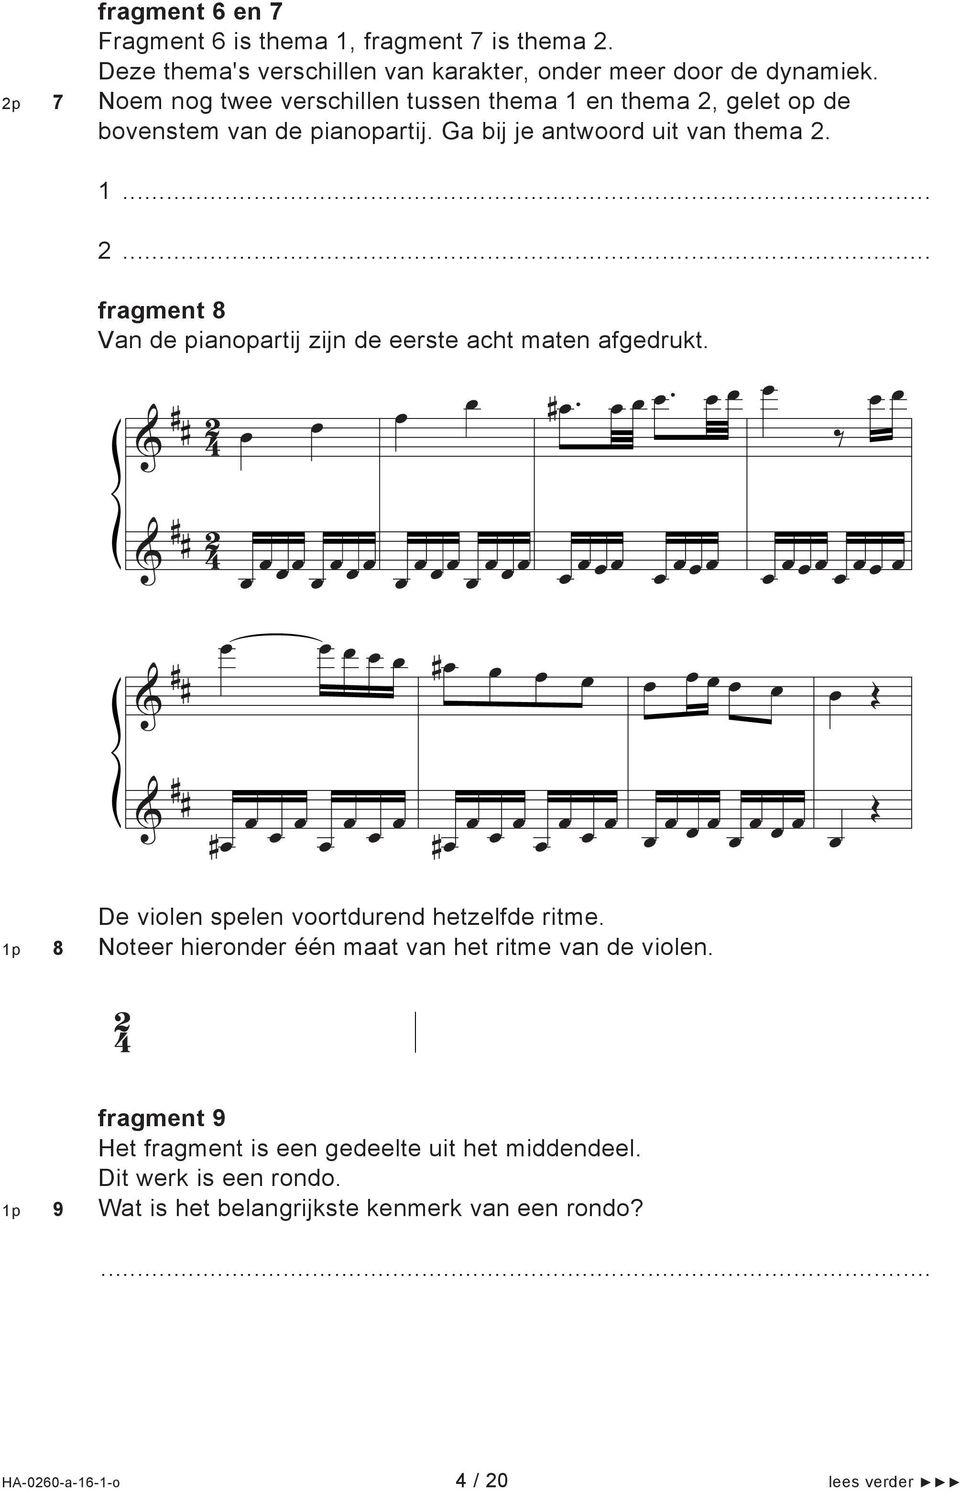 ... fragment 8 Van de pianoparti zin de eerste acht maten afgedrukt. & # # #.. & # # & # # # & # # # # De violen spelen voortdurend hetzelfde ritme.